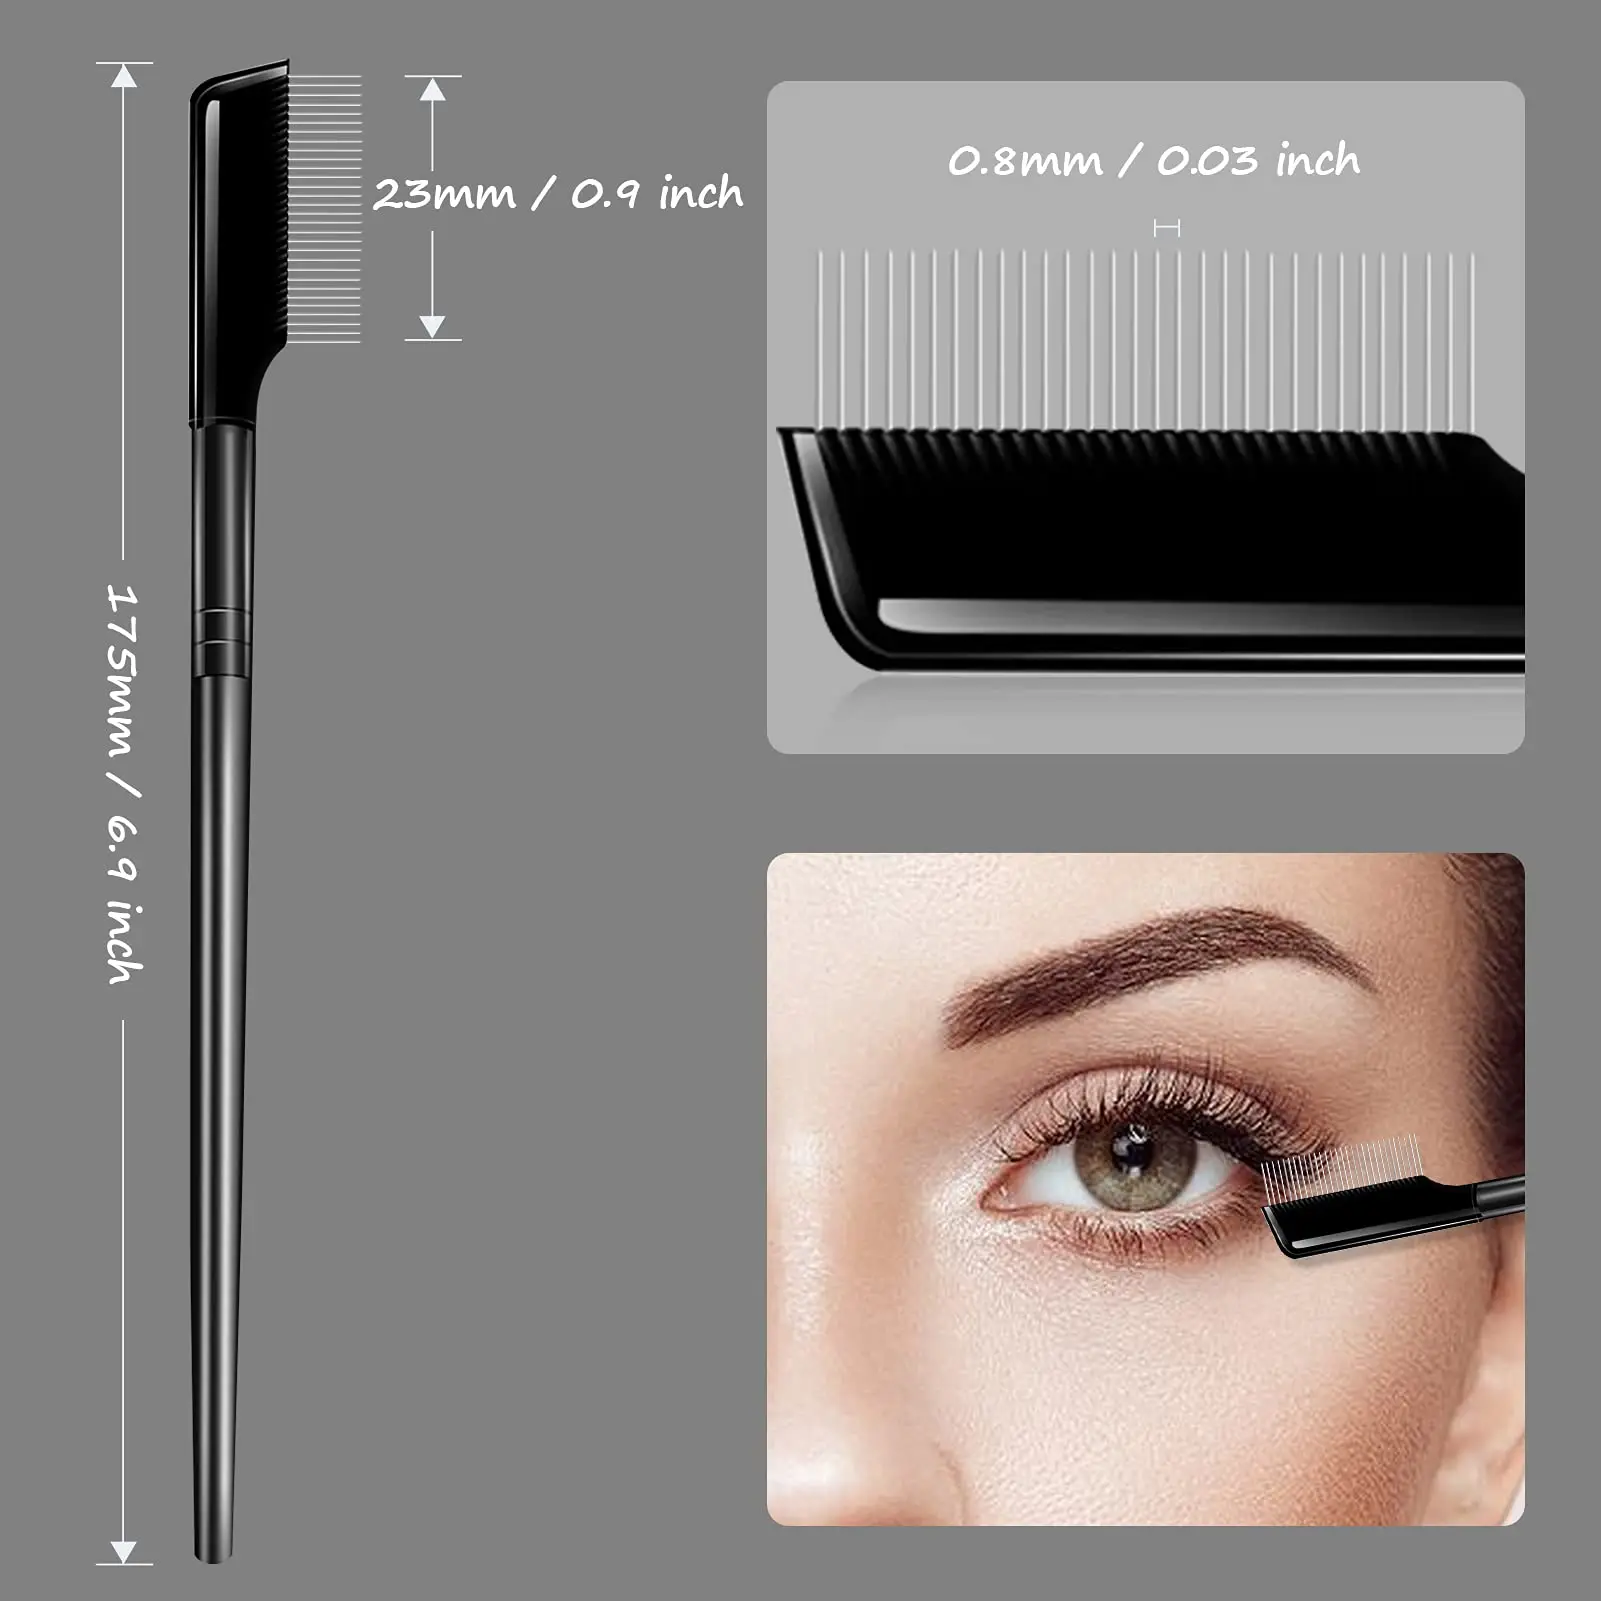 Eyelash Comb Lash Brush Separator- Eyelashes Separator Curler Makeup Mascara Applicator,Eyelash Grooming Brushes Metal Teeth